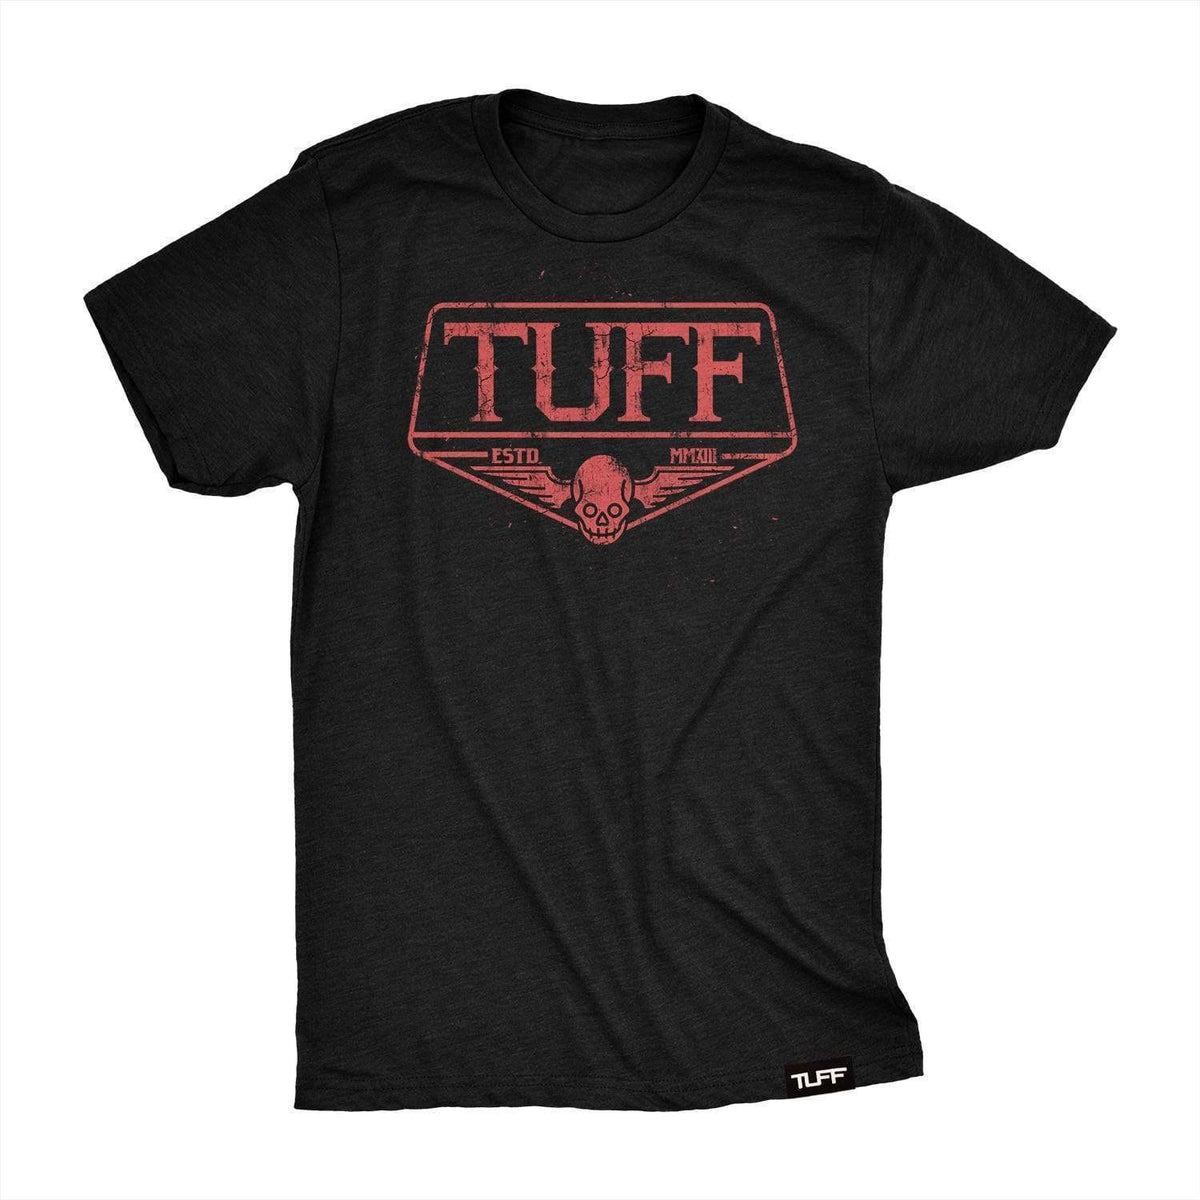 TUFF Skull Wings Tee T-shirt